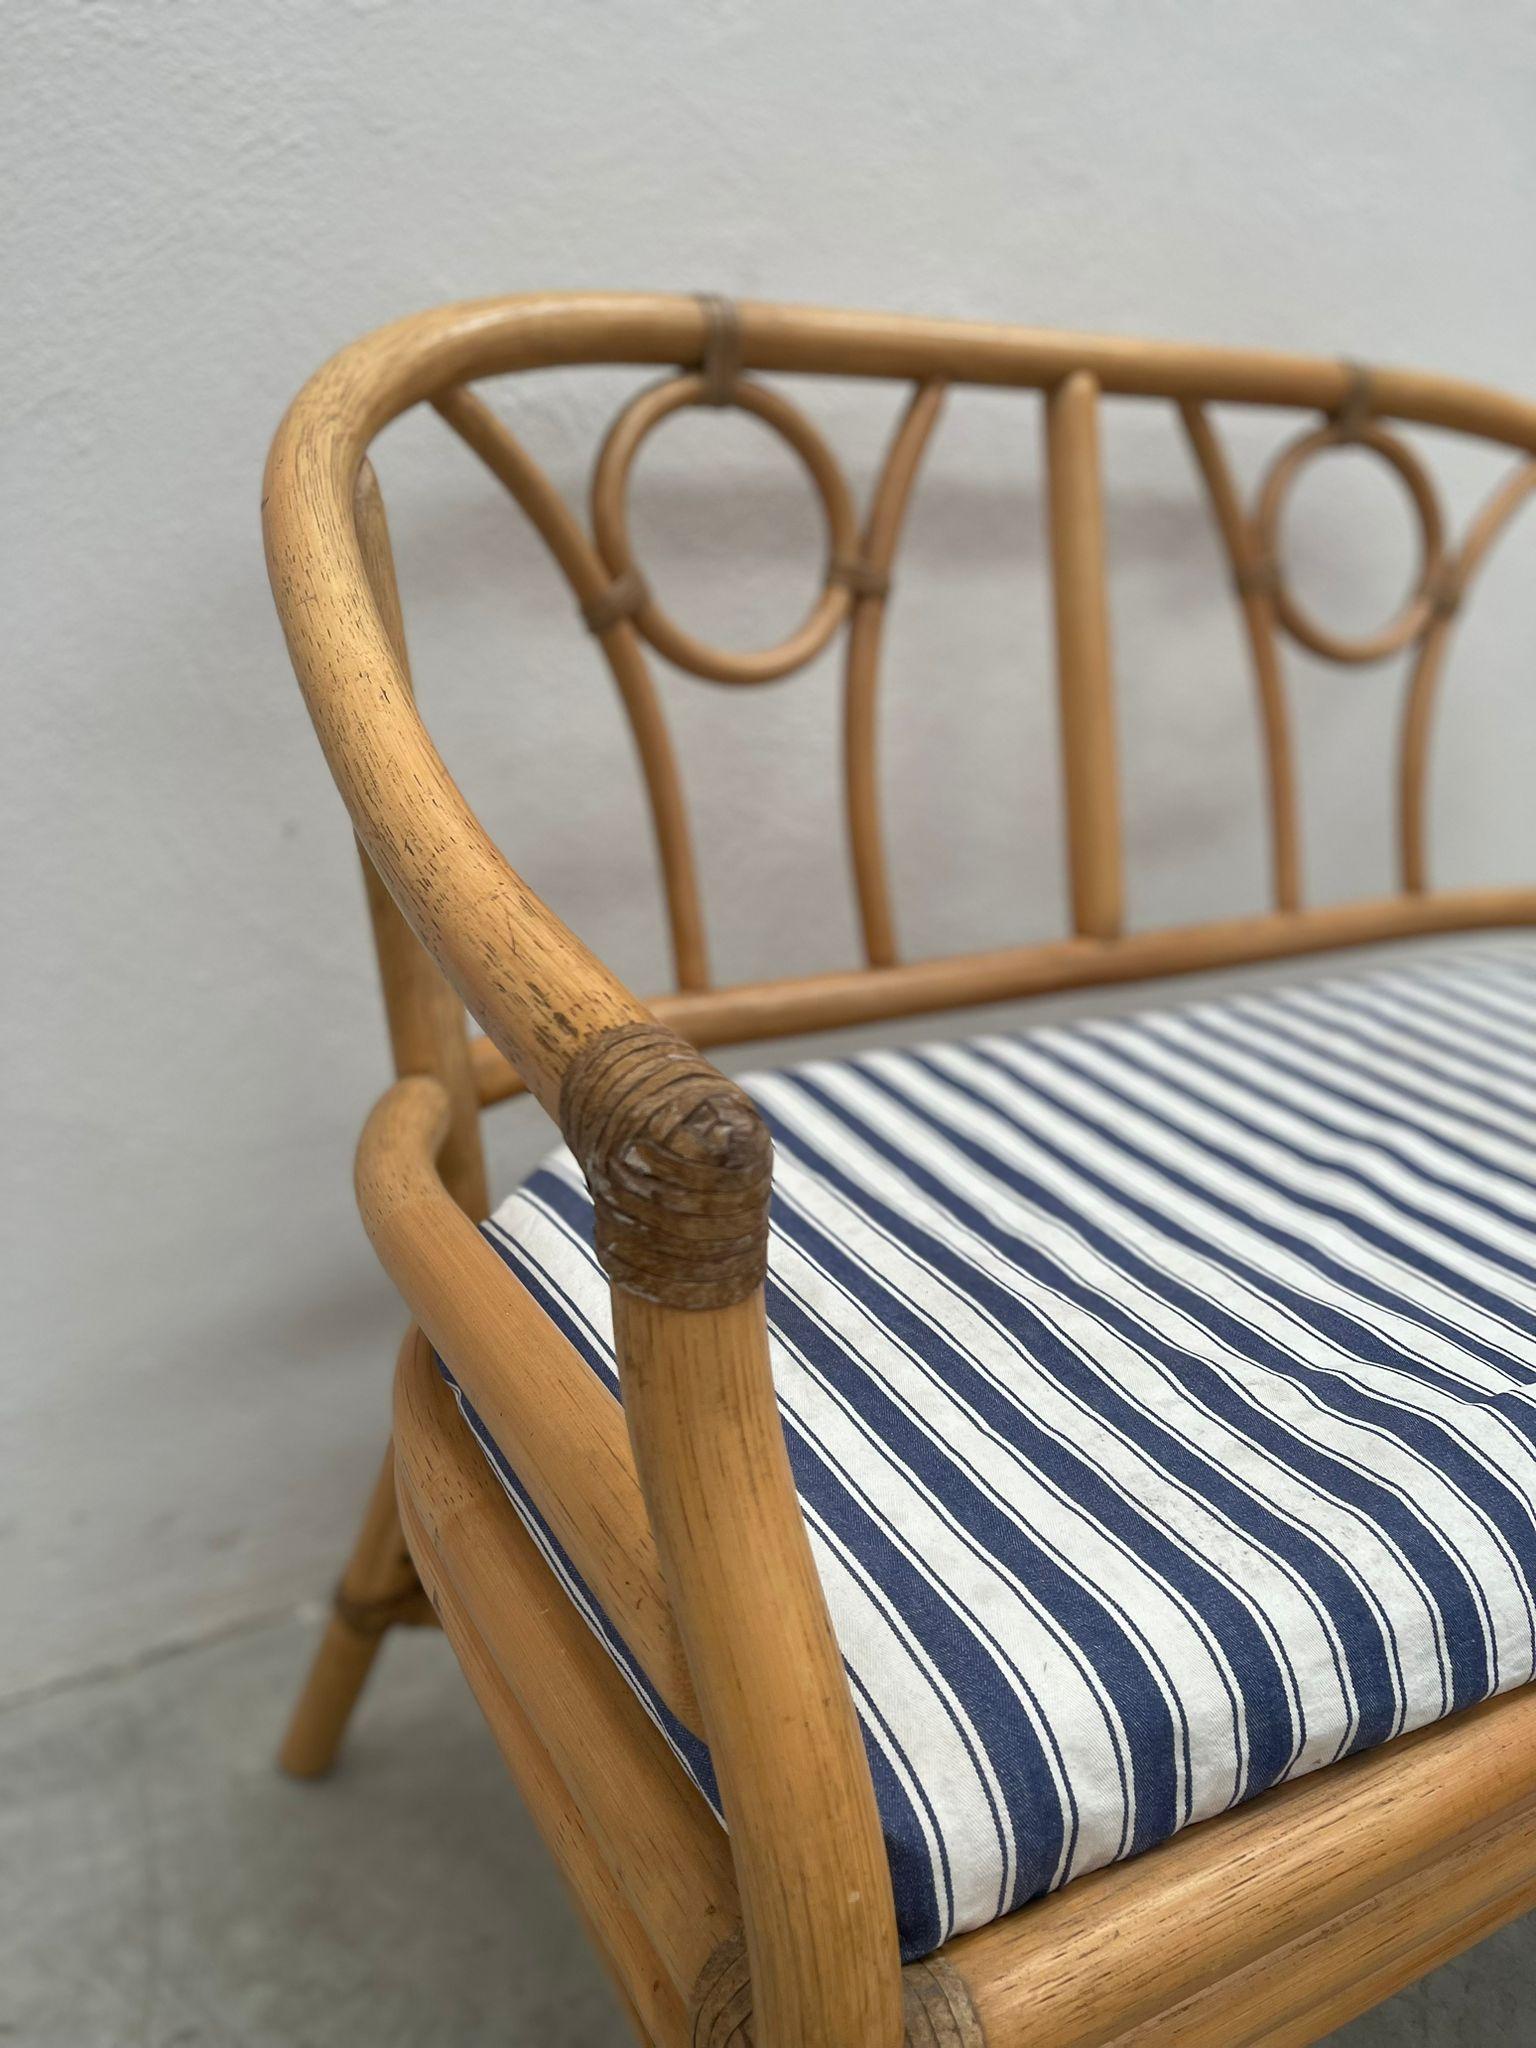 Gartensofa aus edlem Bambus mit elegantem Design Bonacino. Der aus Baumwolle gefertigte Sitz hat die Hauptfarben Blau und Weiß. Sie ist bequem und macht Ihr Äußeres noch vollständiger und anspruchsvoller. 

Private Collection Di Domenico Rugiano